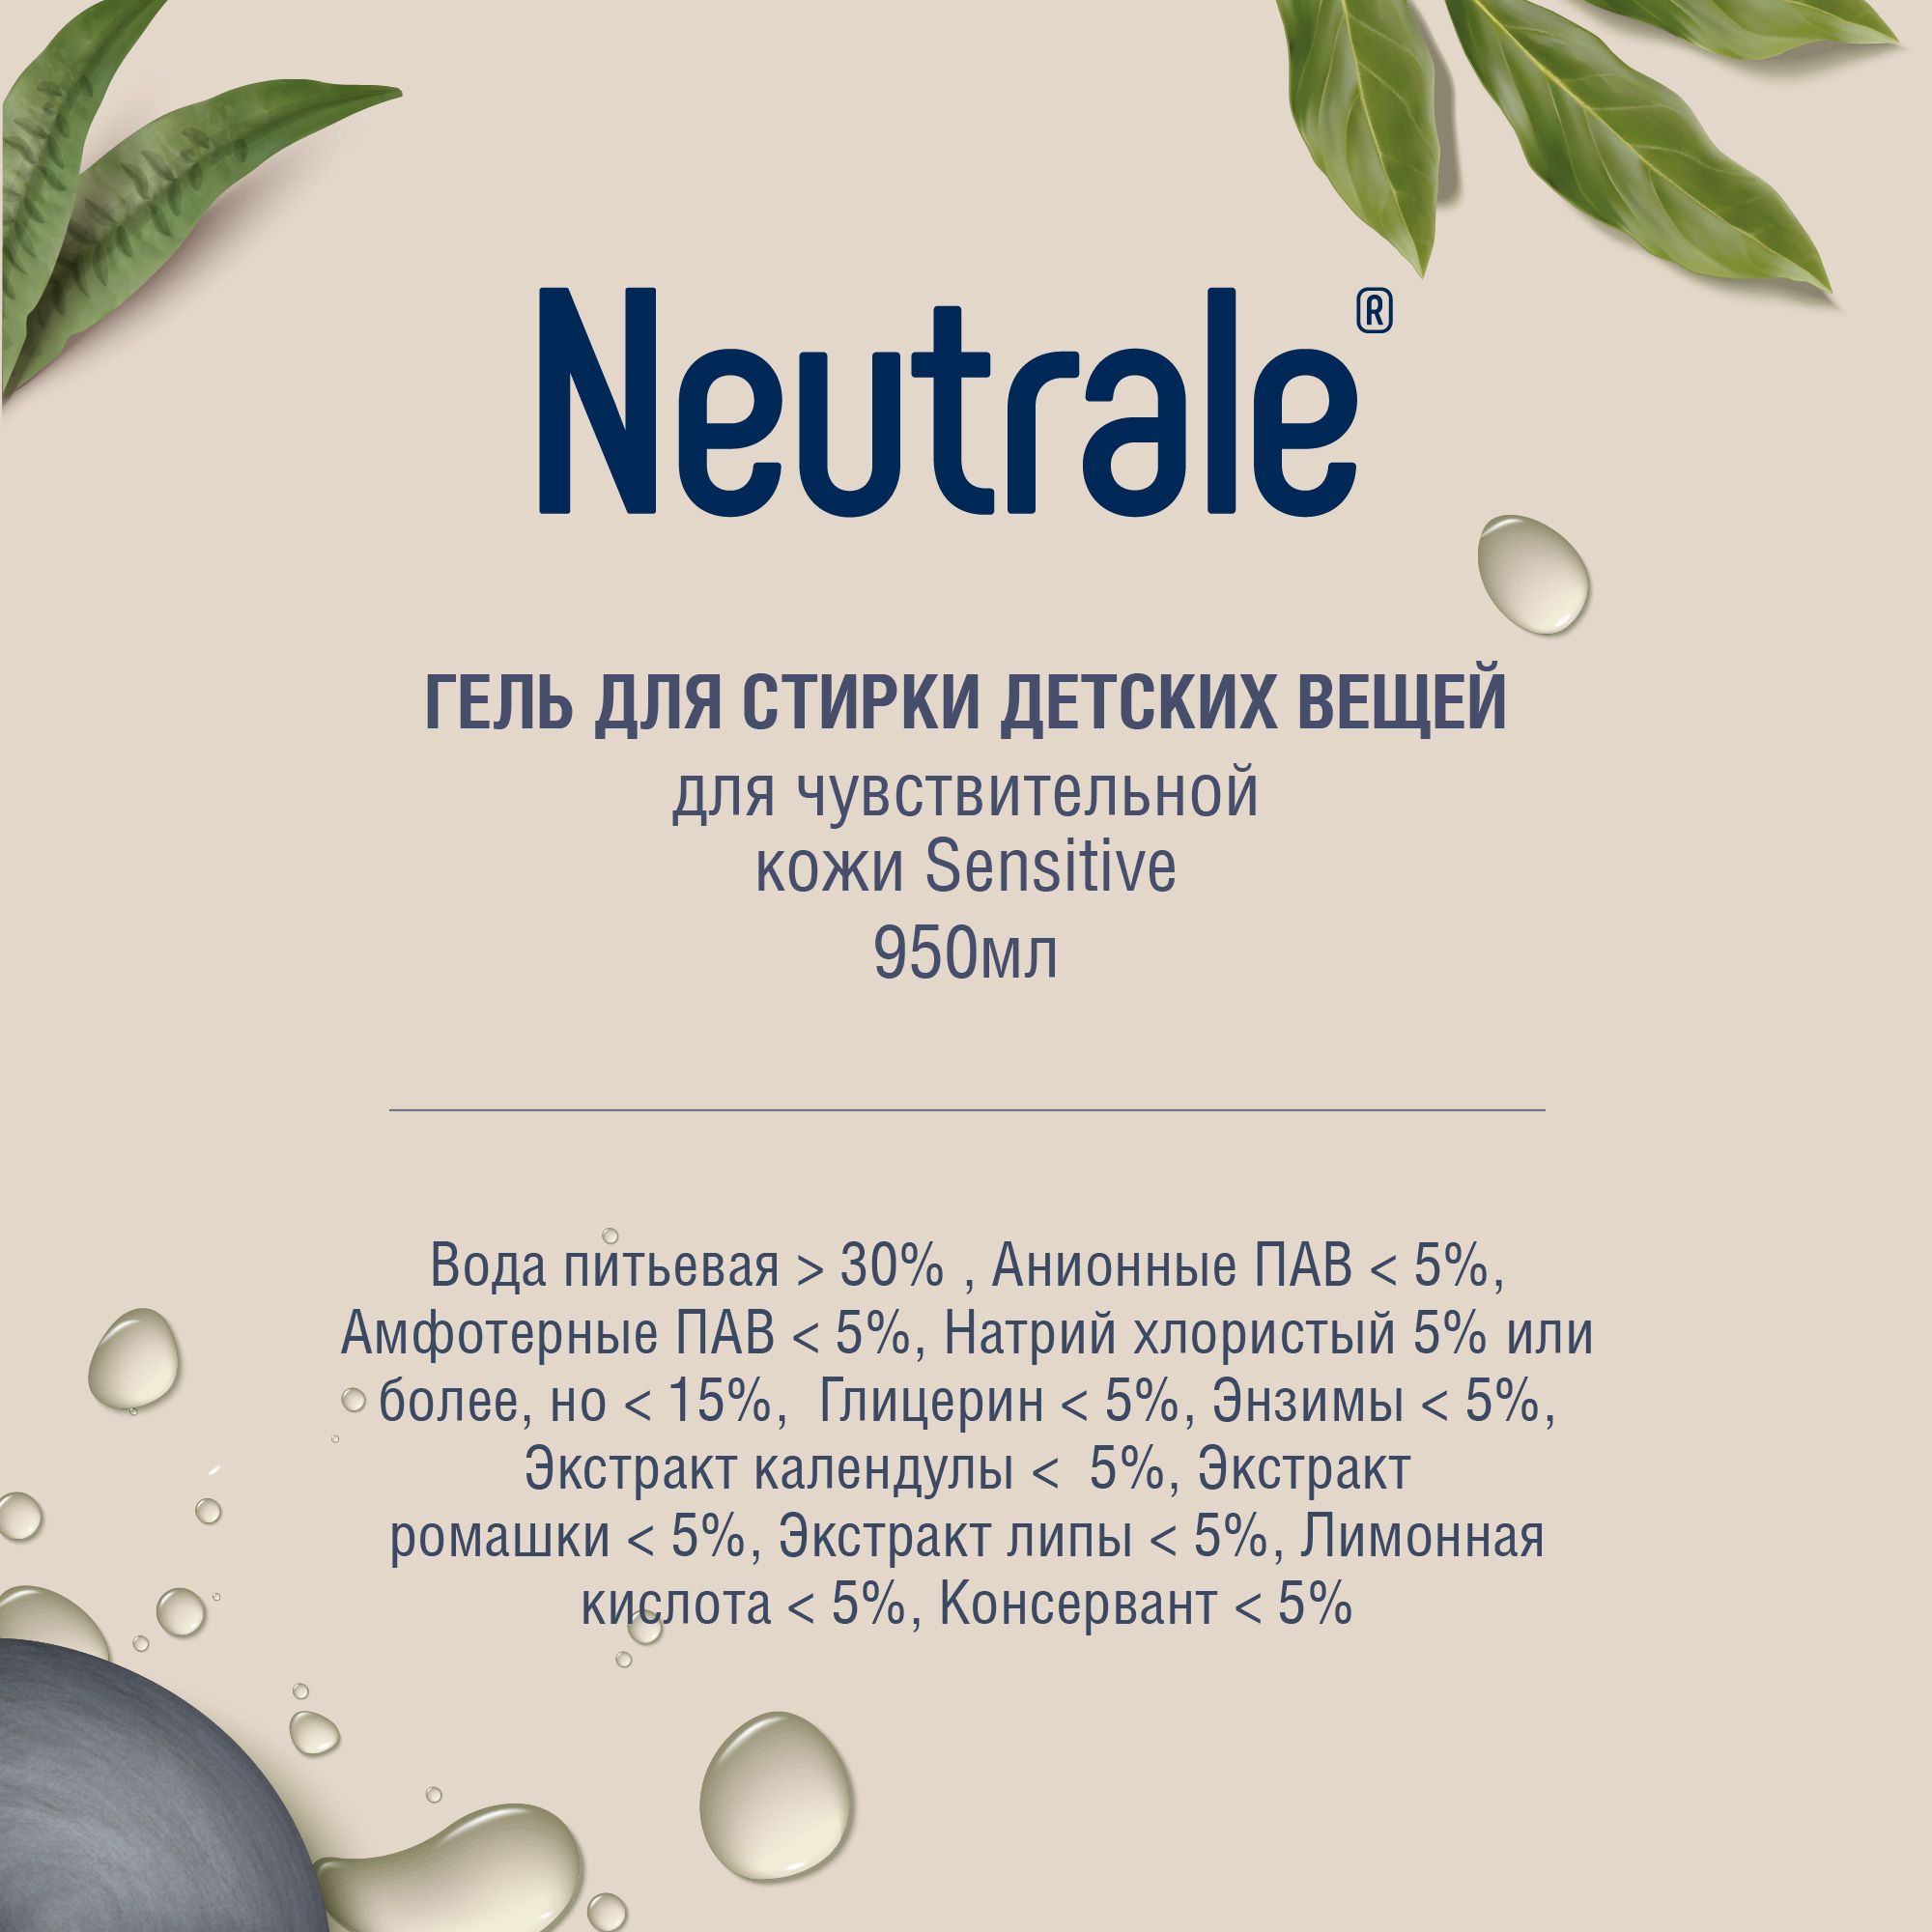 Гель для стирки Neutrale для детской одежды гипоаллергенный без запаха и фосфатов ЭКО 950мл - фото 11